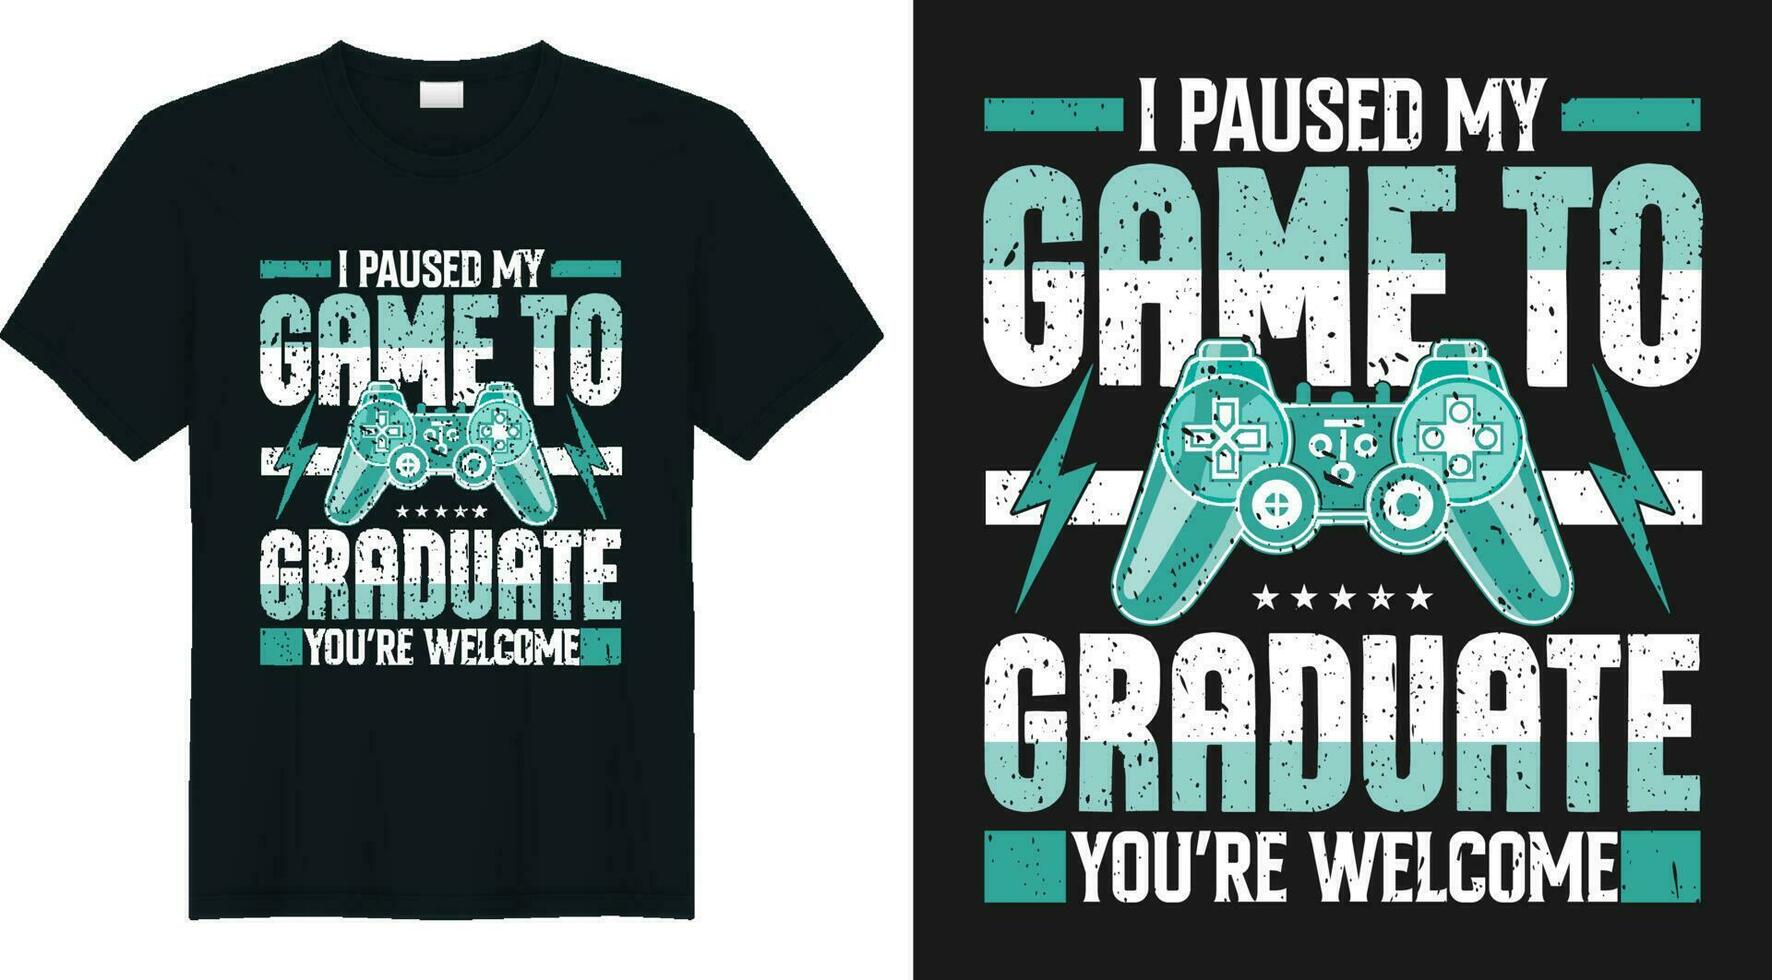 jag pausad min spel till vara examen du är Välkommen årgång gamer gåva t skjorta vektor